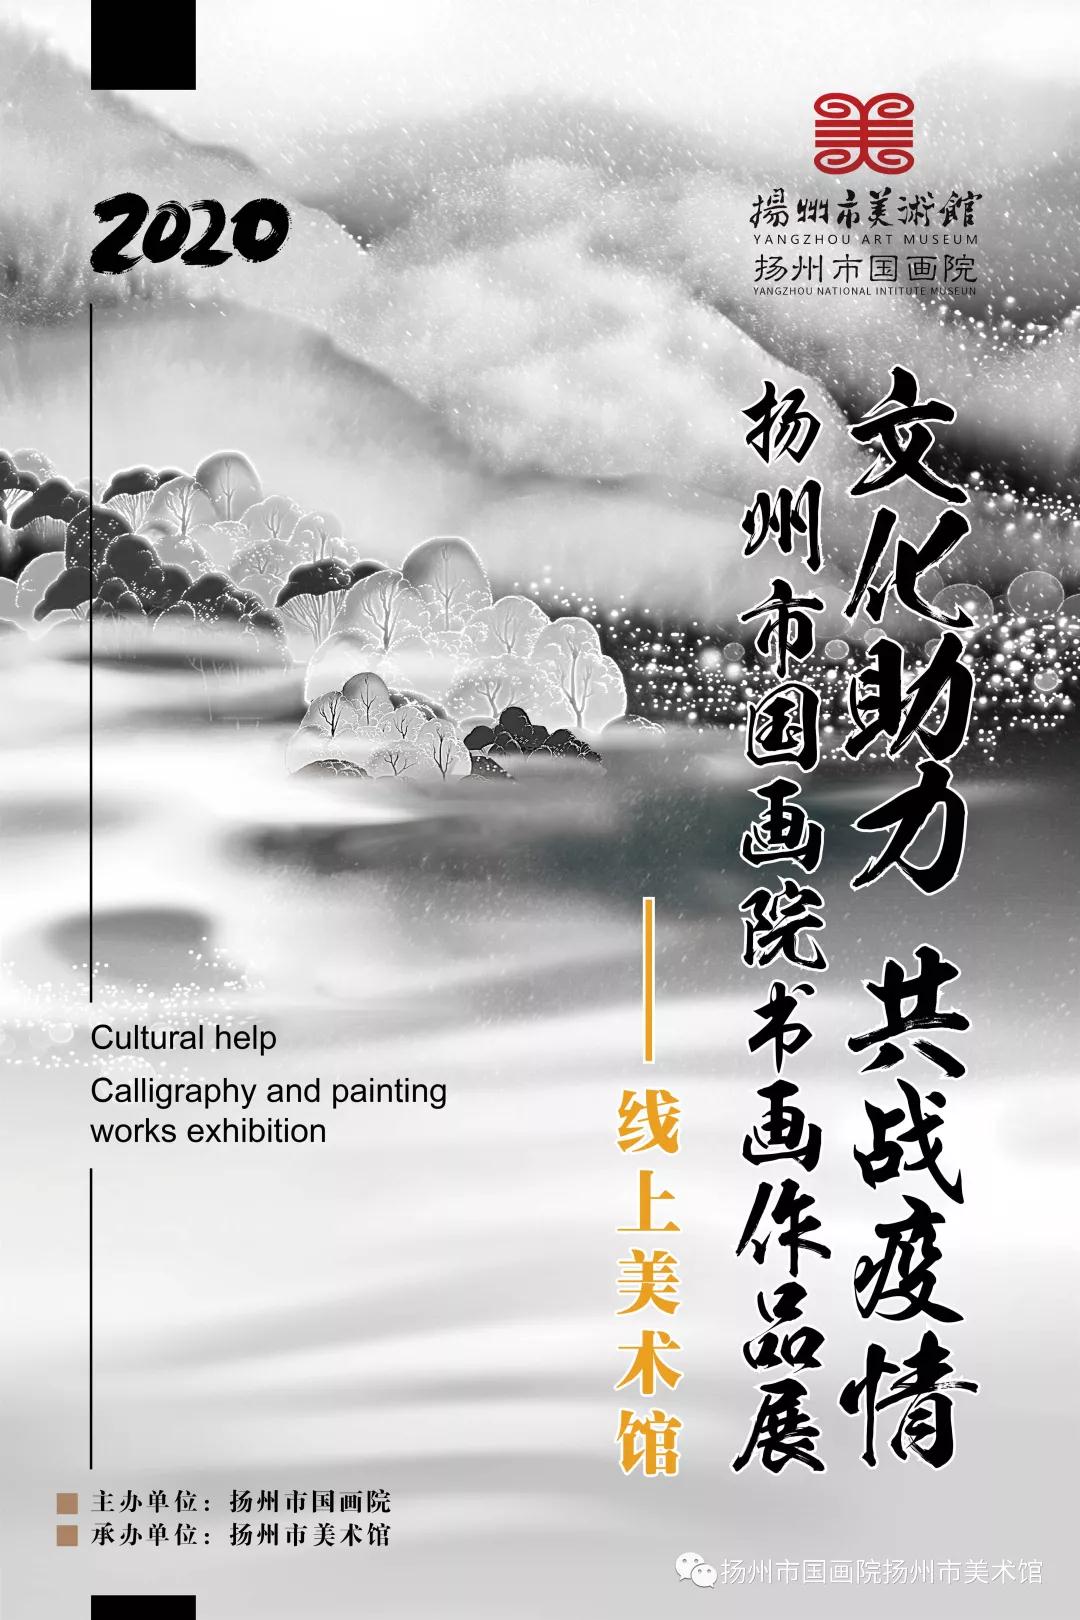 线上美术馆||文化助力 共战疫情——扬州市国画院书画作品展